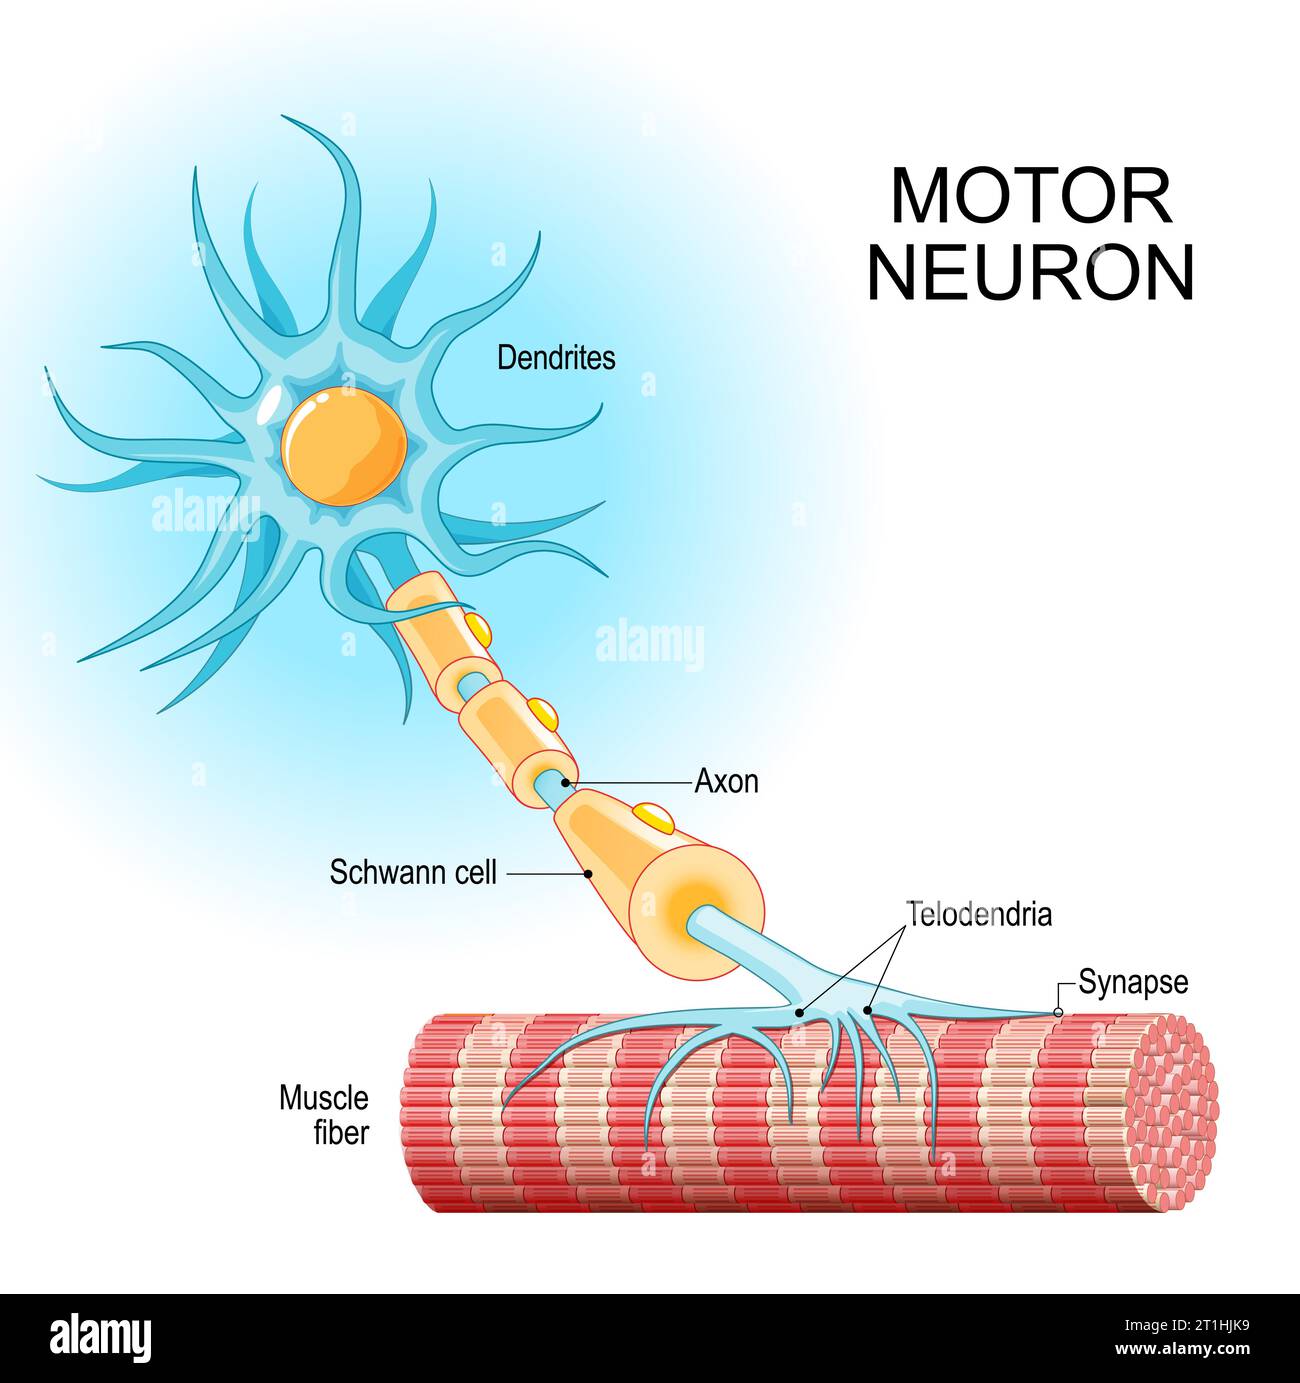 Motoneuron. Struktur und Anatomie eines efferenten Neurons. Nahaufnahme einer Muskelfaser und Motoneuron mit Dendriten, Synapse, Telodendria, Axon, Schwa Stock Vektor